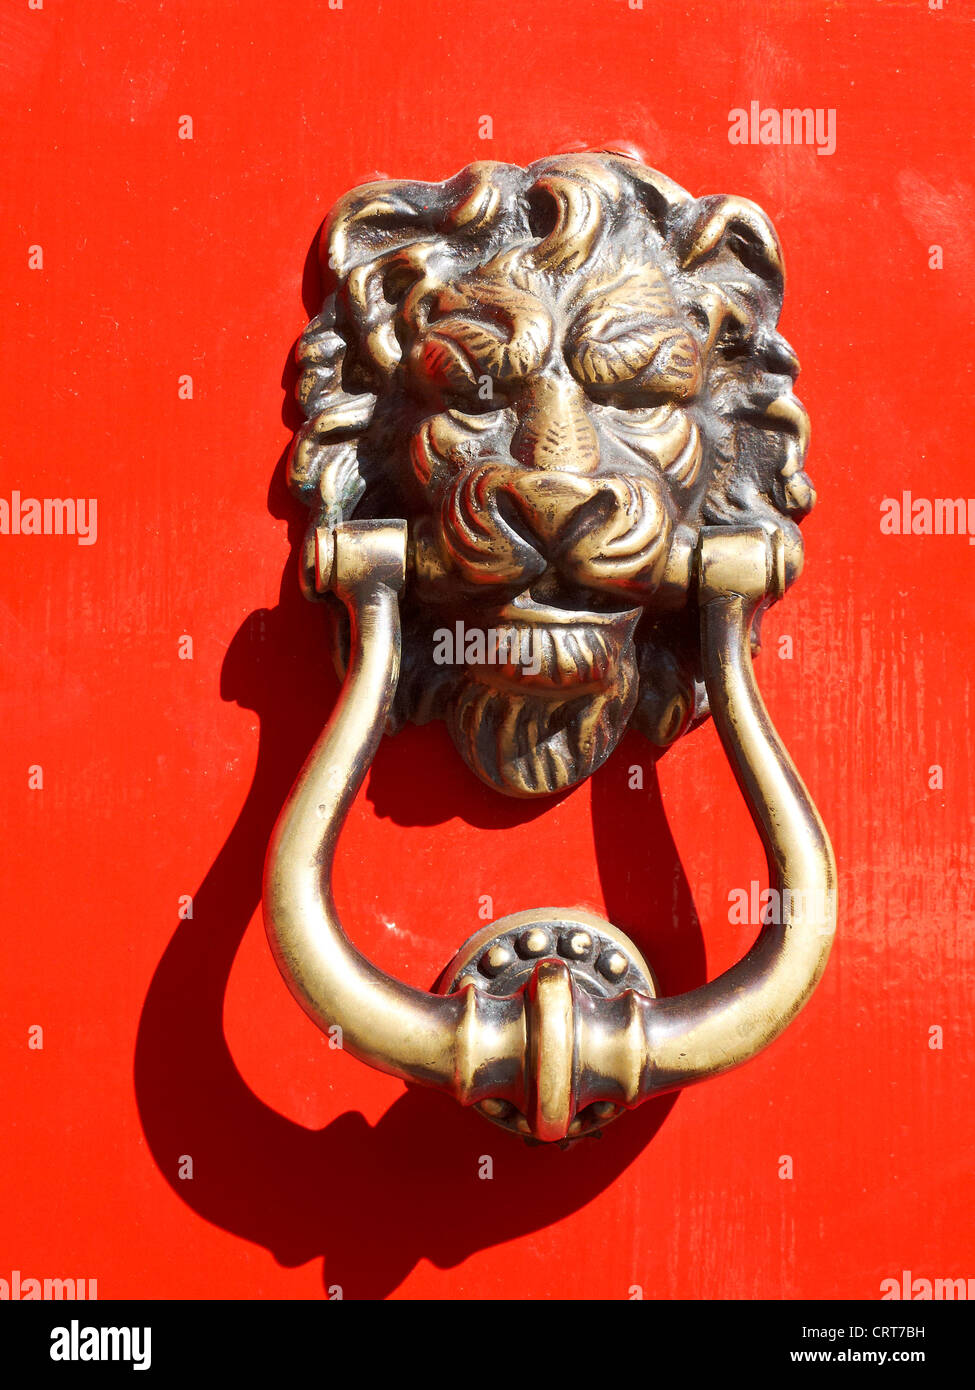 Lion head door knocker on red door Stock Photo